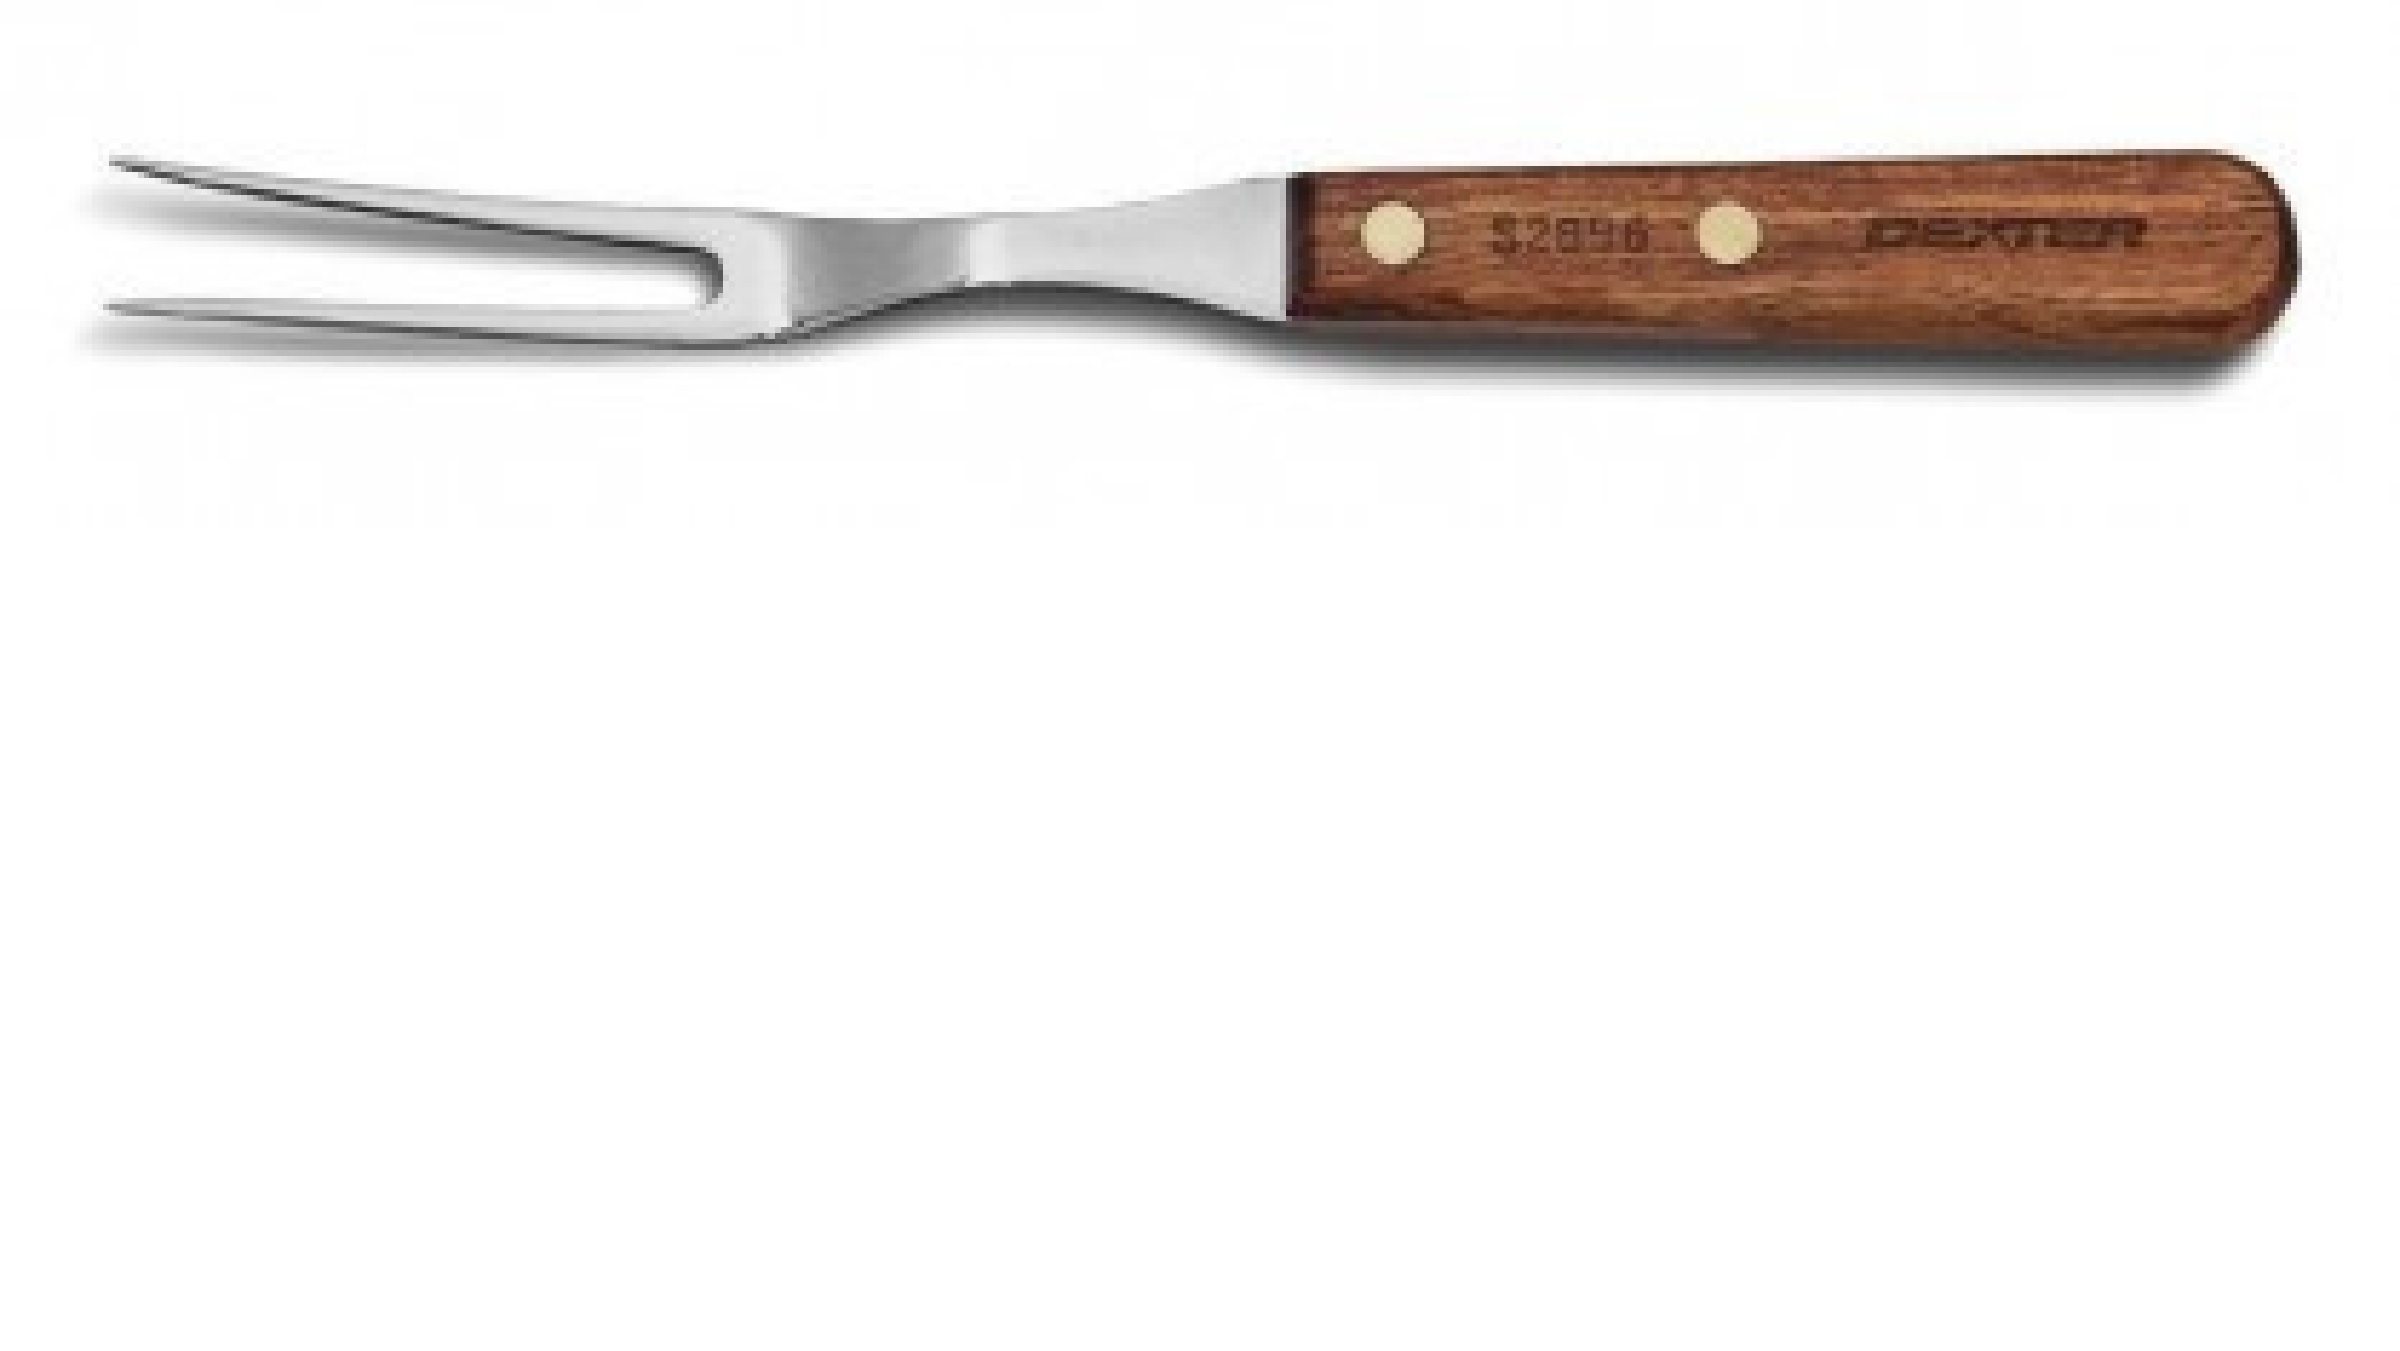 DUEBEL 2-Piece Wood Handle Steak Knife & Fork Set | Includes 13.5 Steak Knives + 13.6 Forks